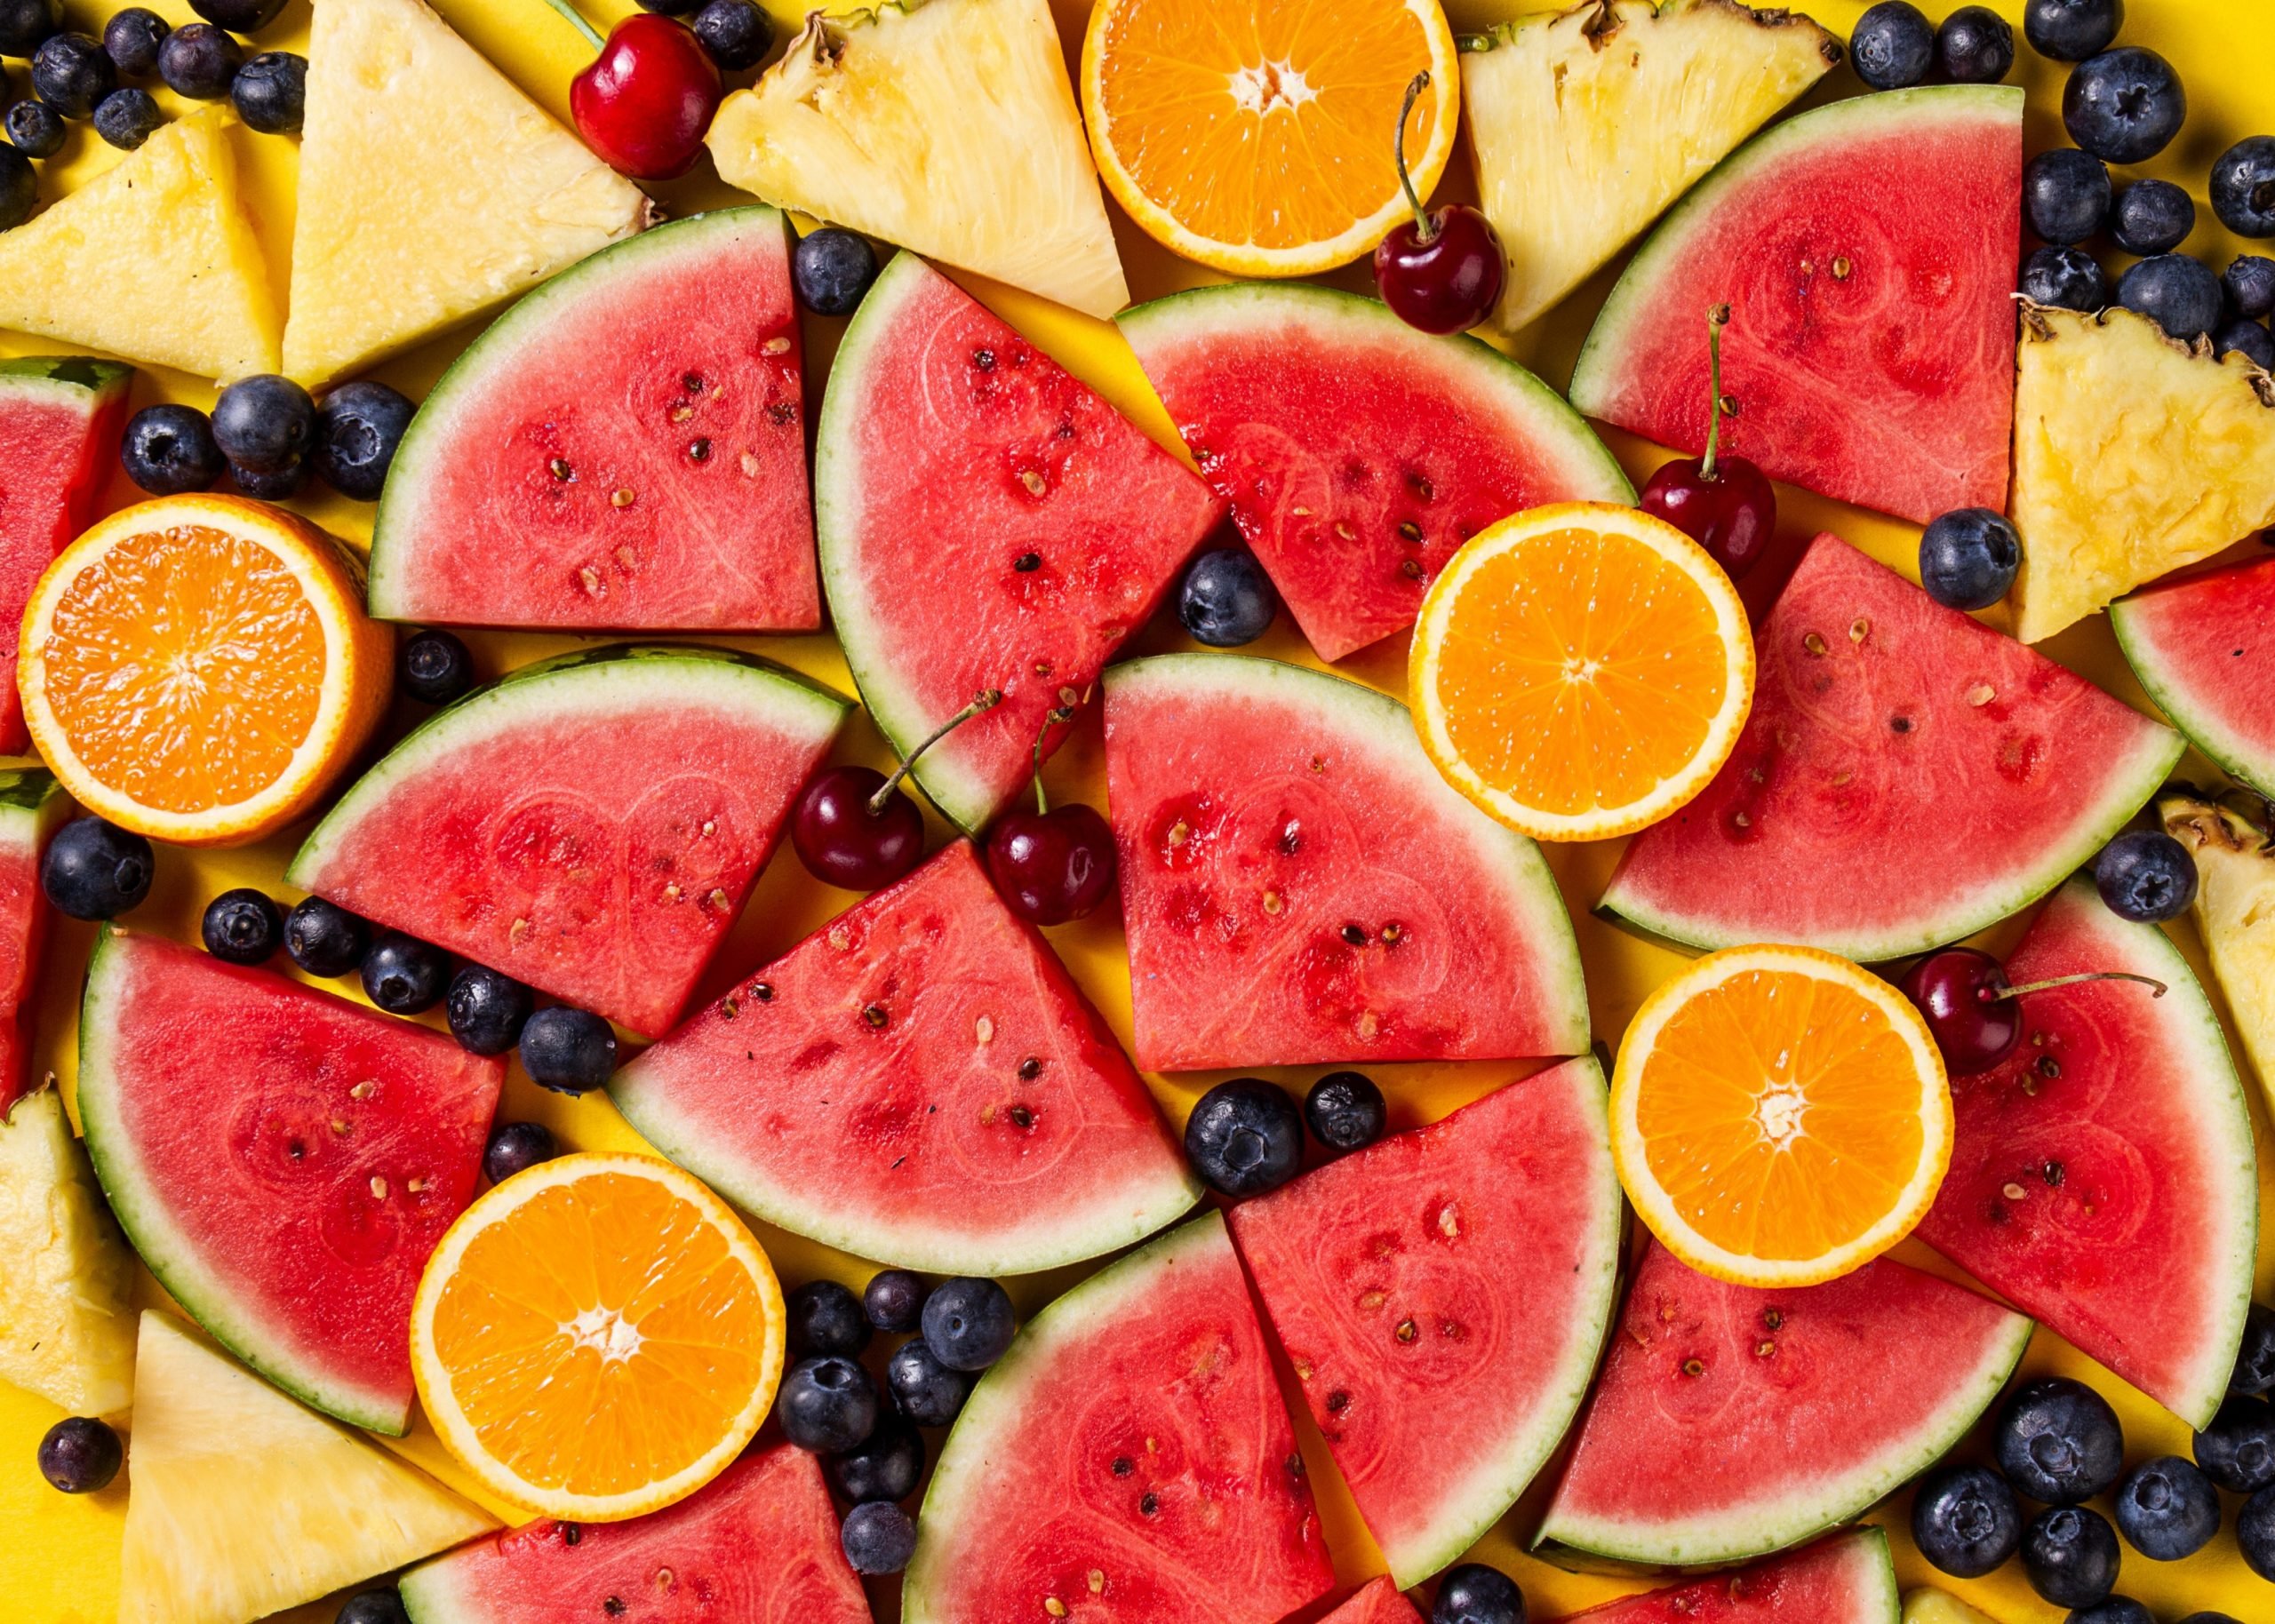 Enxaqueca: cientistas descobriram 9 frutas que causam enxaqueca instantânea